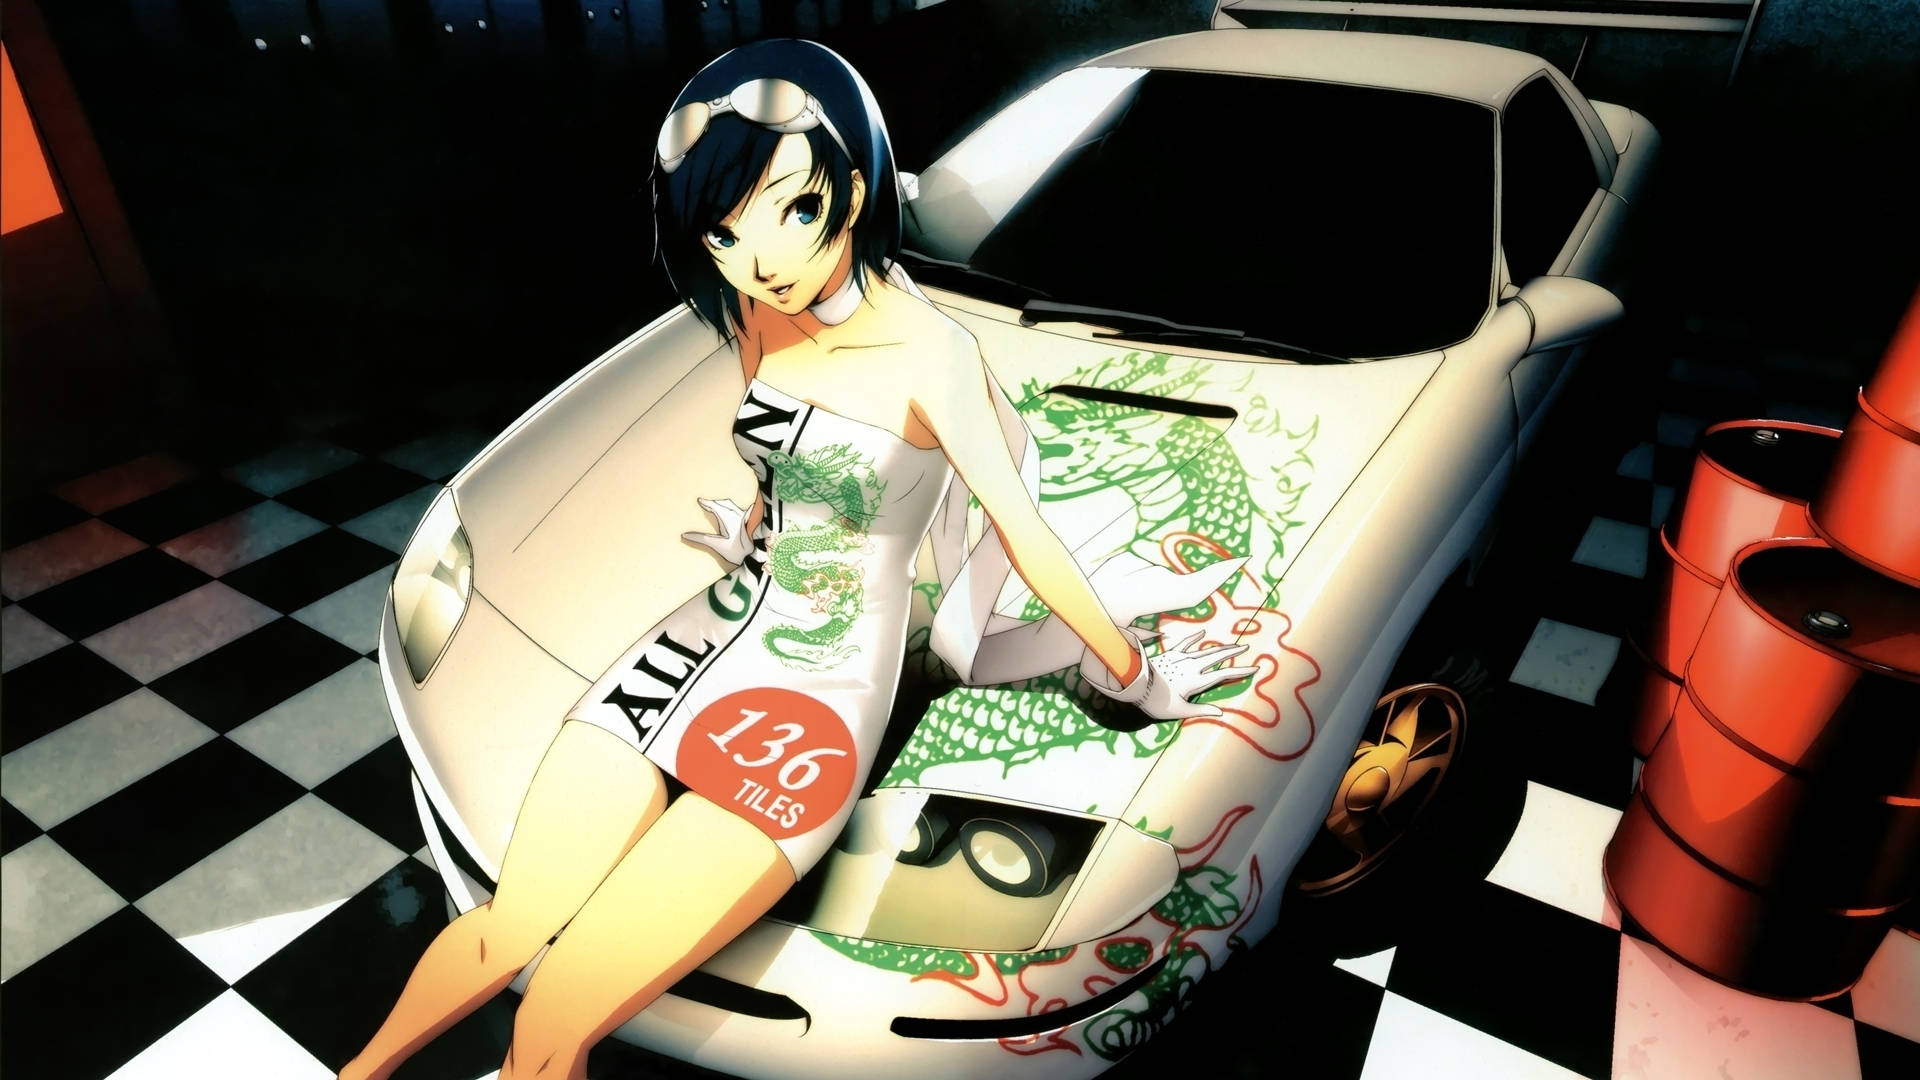 Girl On The Hood Of A Car Anime